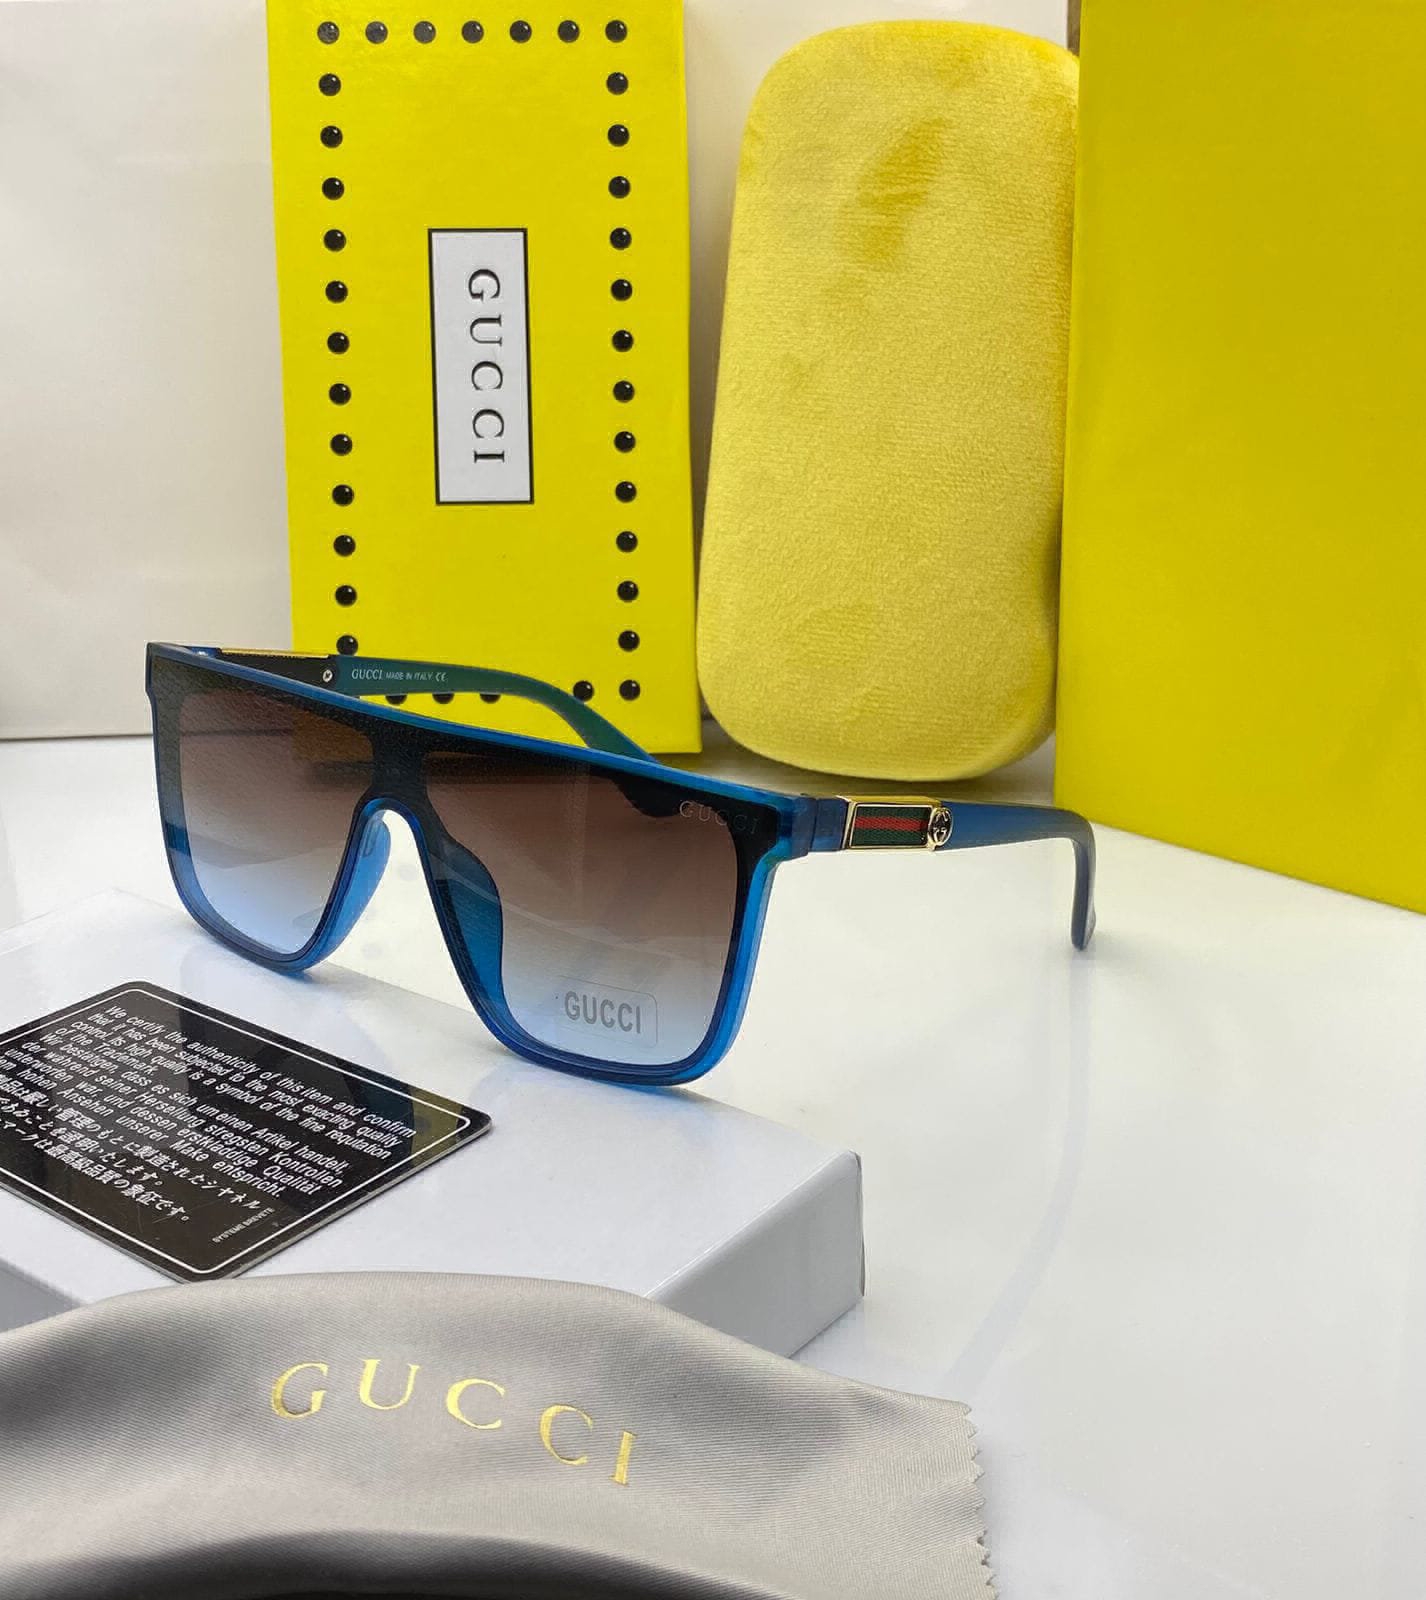 Gucci - Square Acetate Sunglasses - Blue - Gucci Eyewear - Avvenice